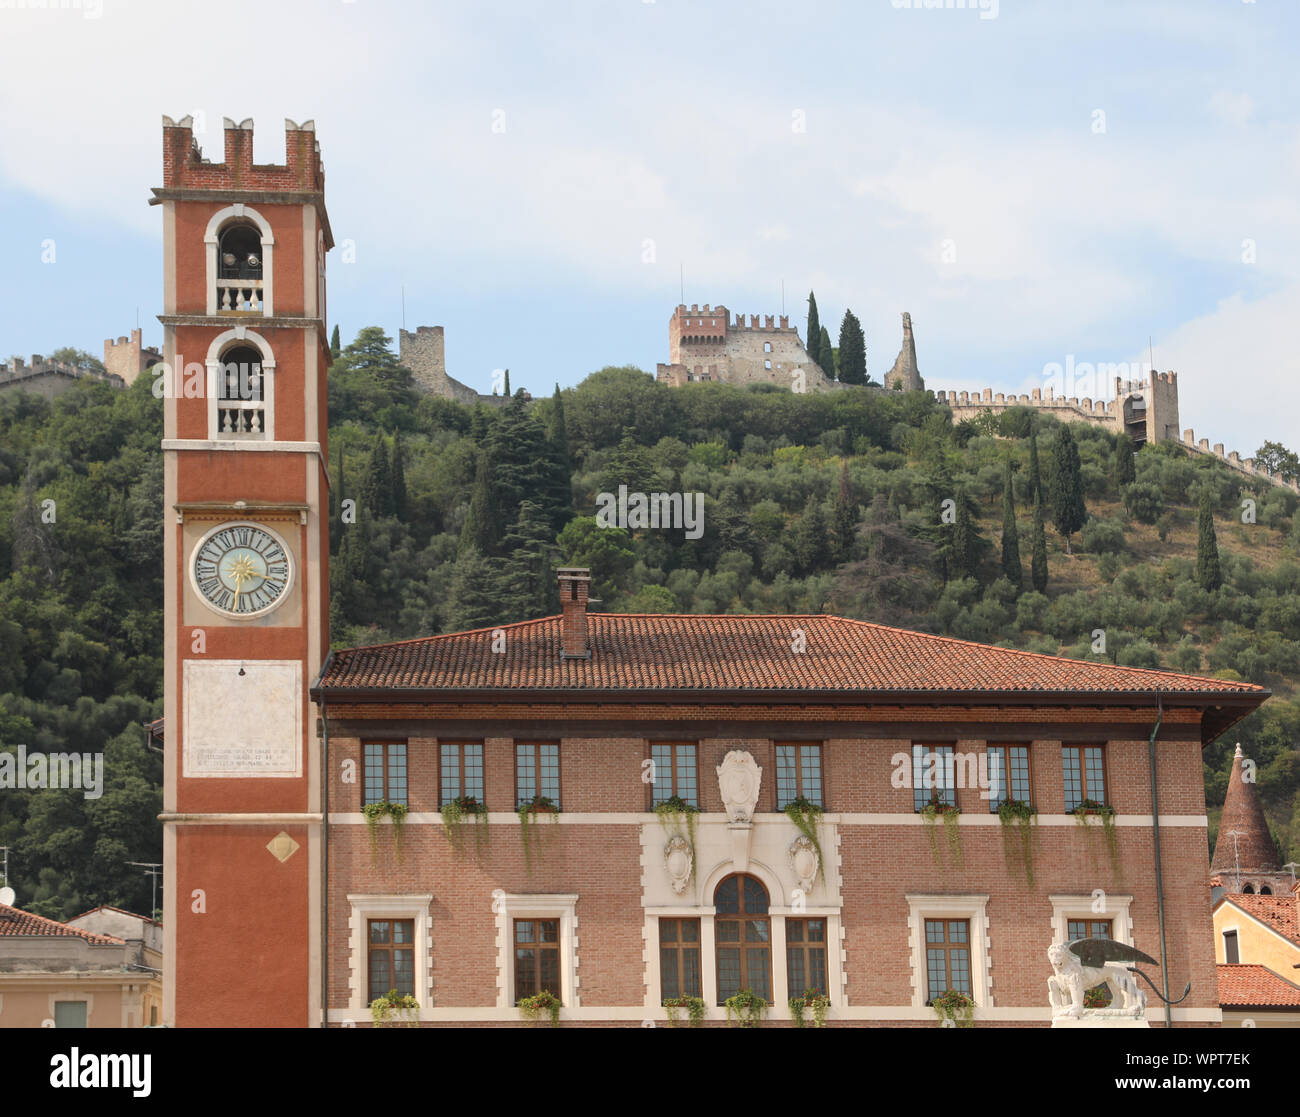 Schiavon, VI, Italie - 1 septembre 2019 : Ancien bâtiment sur la place principale de la ville appelée Piazza degli Scacchi et le château sur la colline Banque D'Images